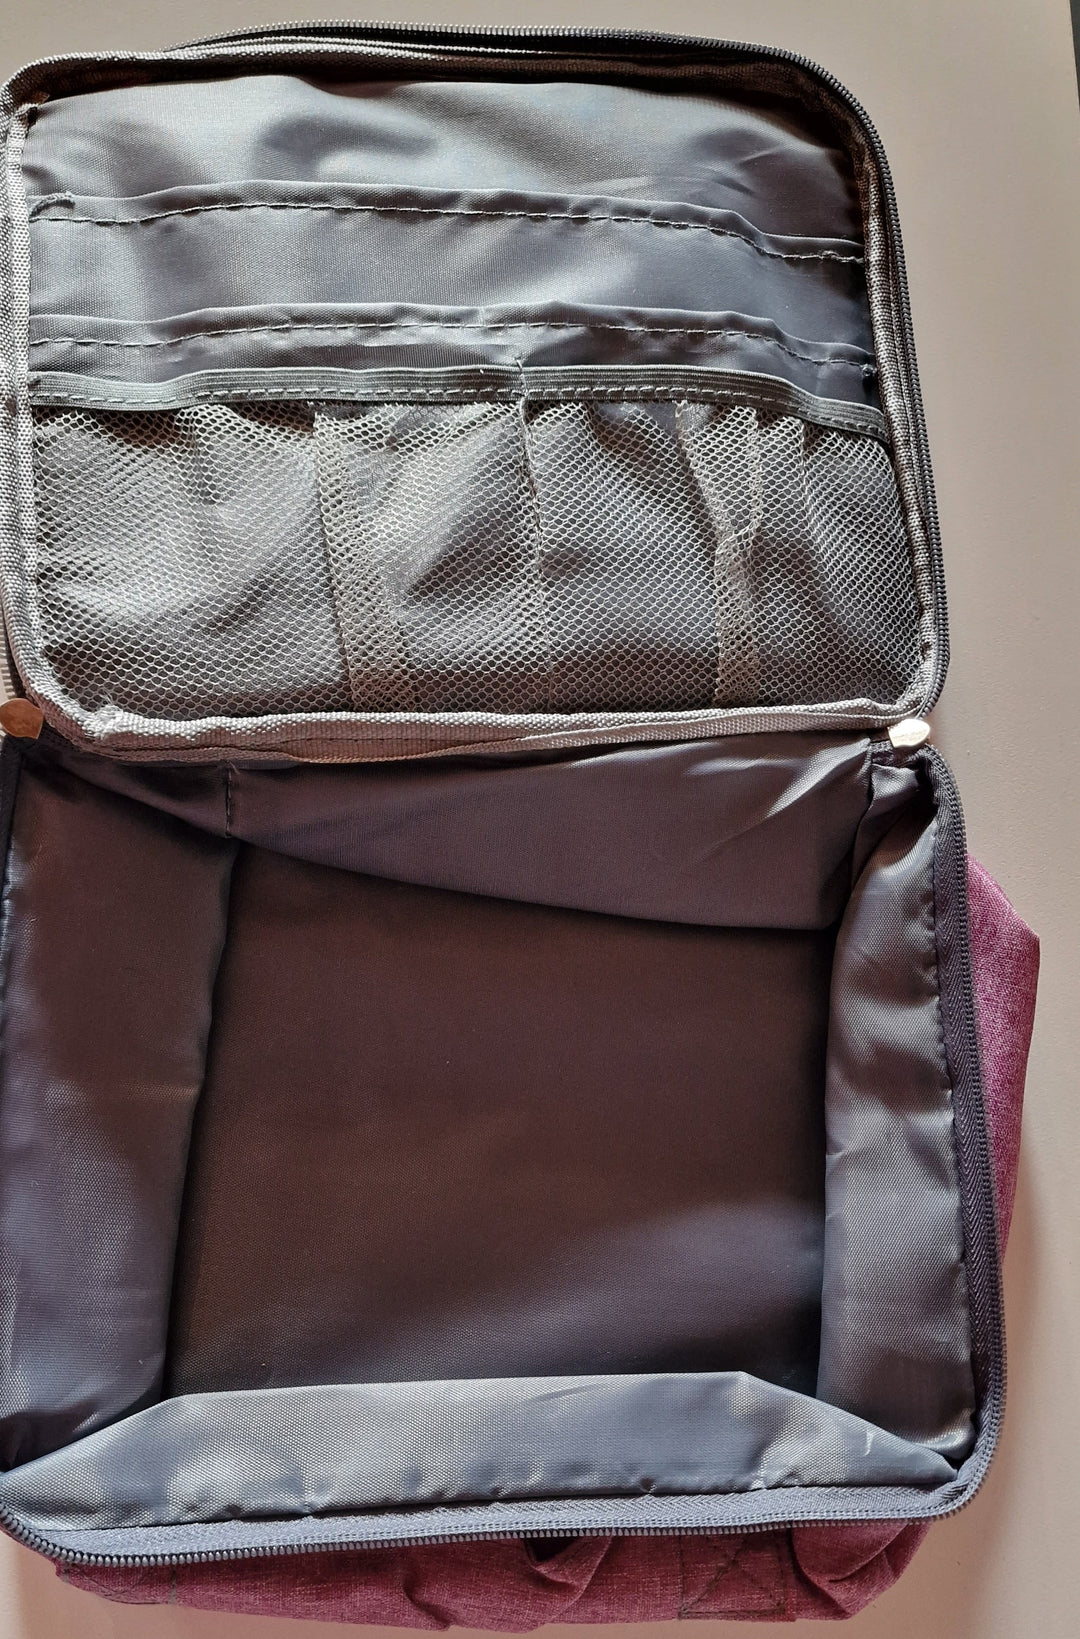 Erste Hilfe Tasche für die Reise ( ohne Inhalt ), lila